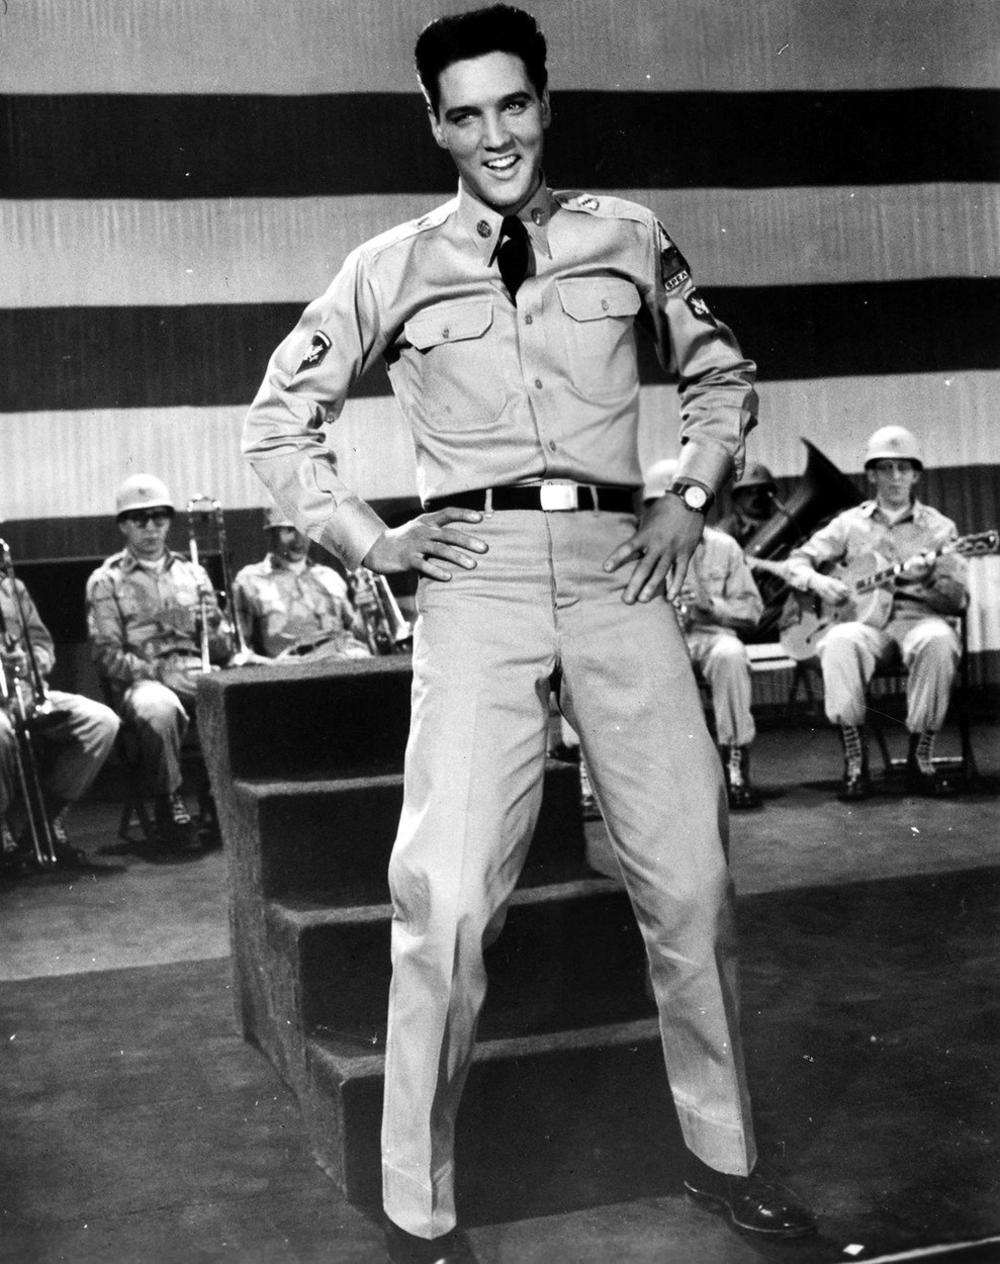 Dok je bio u vojsci, Elvisu je umrla majka i on od tog trenutka više nikada nije bio isti. Počeo je da uzima pilule za spavanje, na koje se brzo navikao.